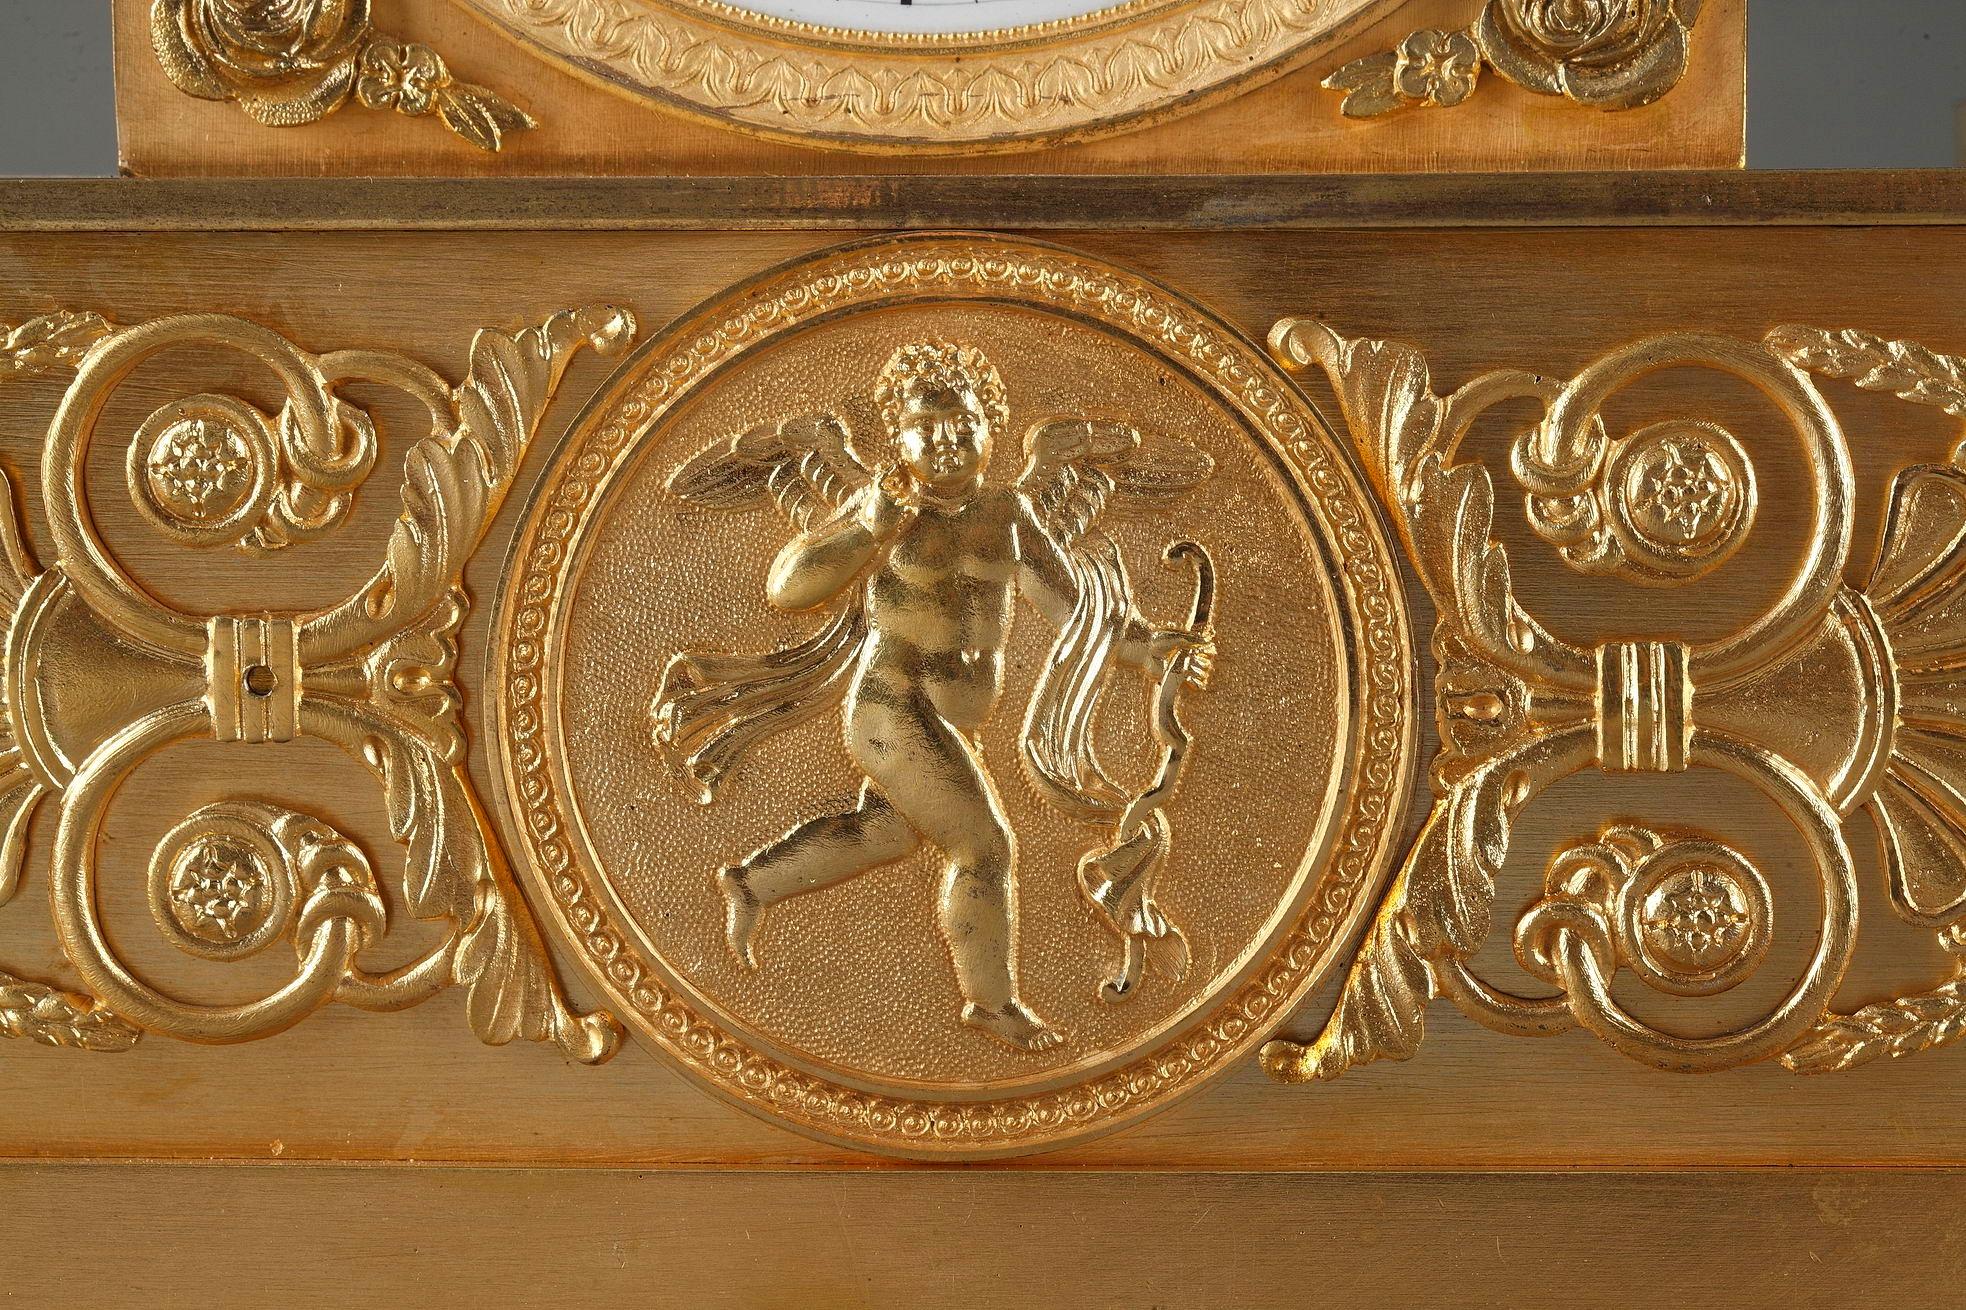 Pendule Empire français finement ouvragée en bronze doré, représentant une jeune fileuse portant une robe classique, assise sur le cadran près d'une lyre et d'une aiguière. La base est accentuée par de généreux rinceaux, une palmette et un médaillon